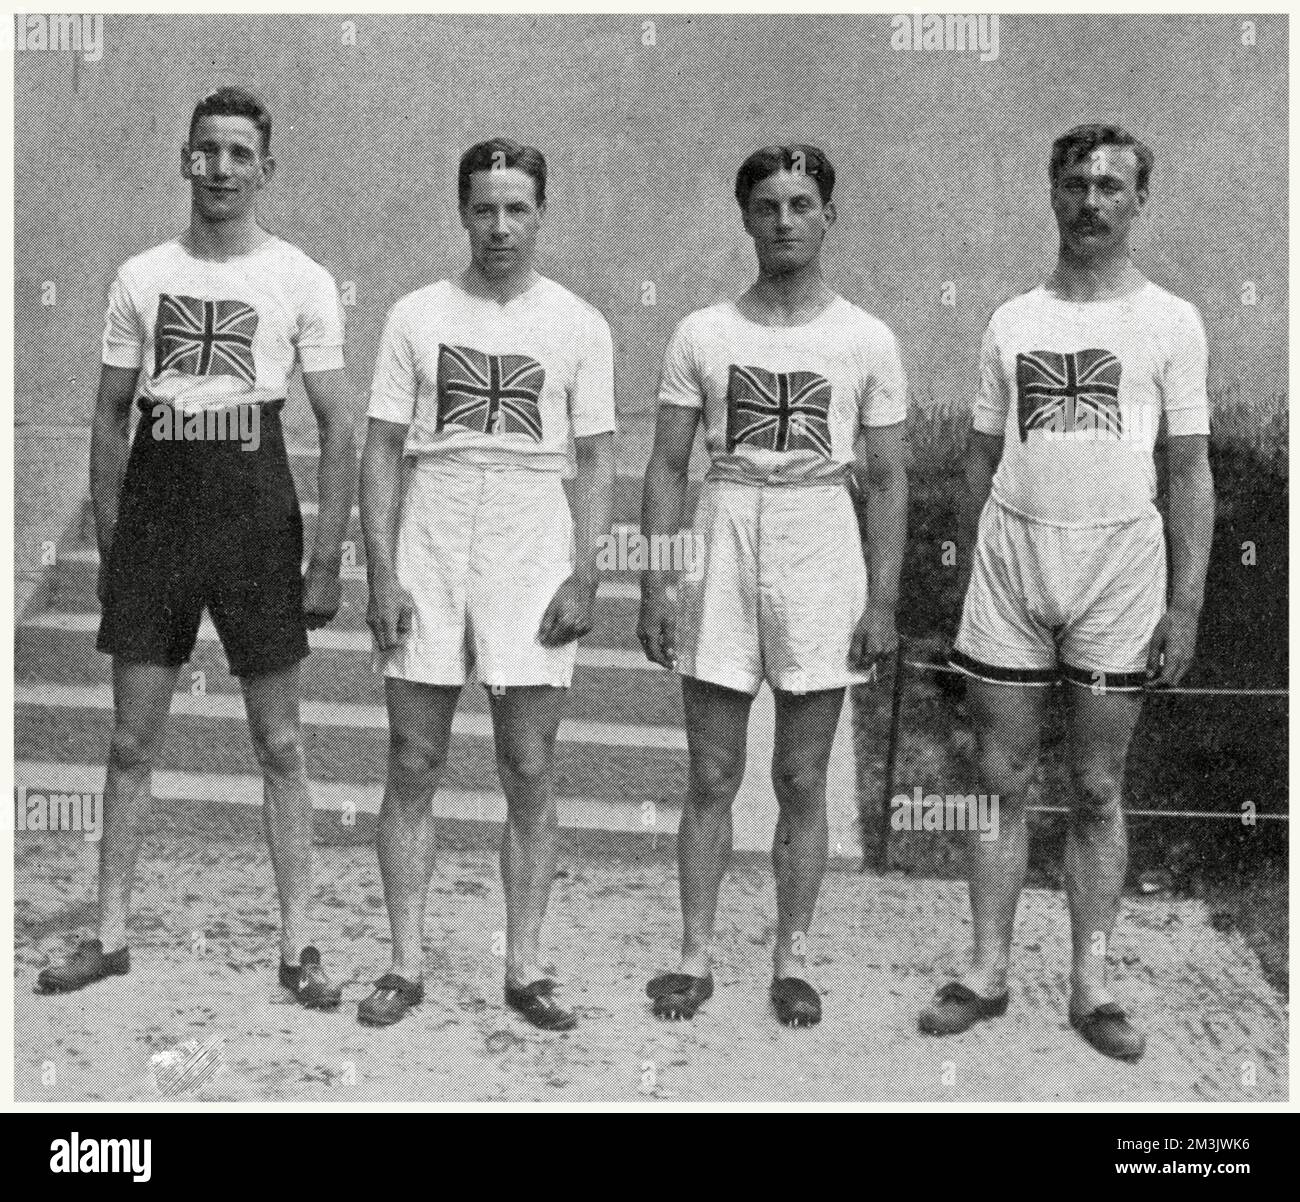 Das englische 4 x 100 Meter Staffelteam, das 1912 bei den Olympischen Spielen in Stockholm Goldmedaillen gewonnen hat. Von links nach rechts: D. Jacobs, H. M. Macintosh, W. R. Applegarth und V. D'Arcy. Beachten Sie die hoch geschnittenen Shorts und T-Shirts, die mit einem Union Jack verziert sind. Stockfoto